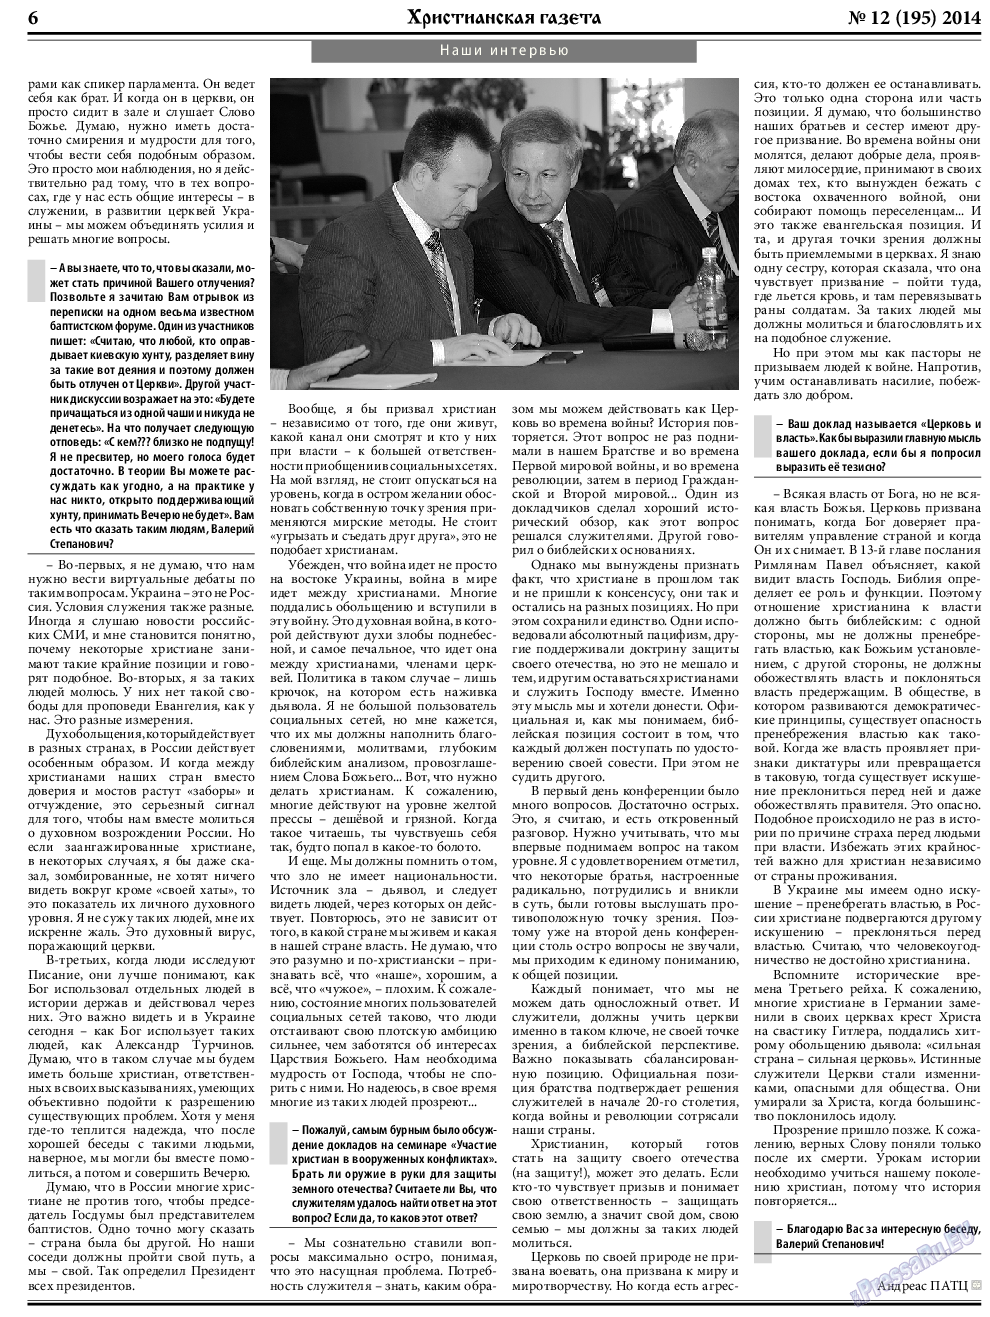 Христианская газета, газета. 2014 №12 стр.6